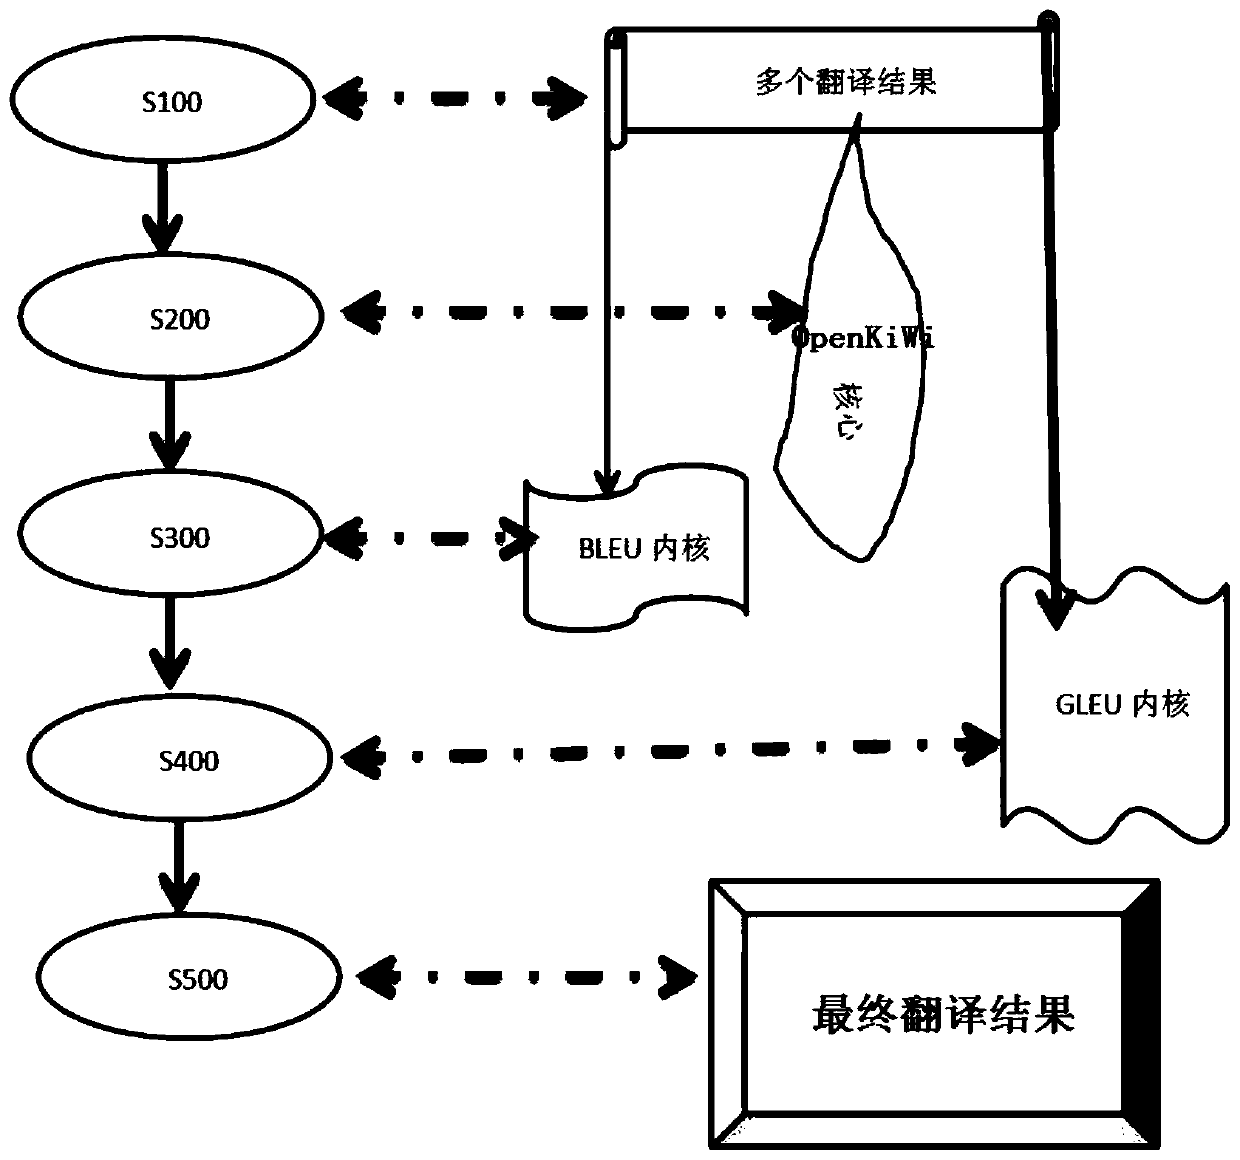 Engine optimization method based on OpenKiWi evolution and translation system